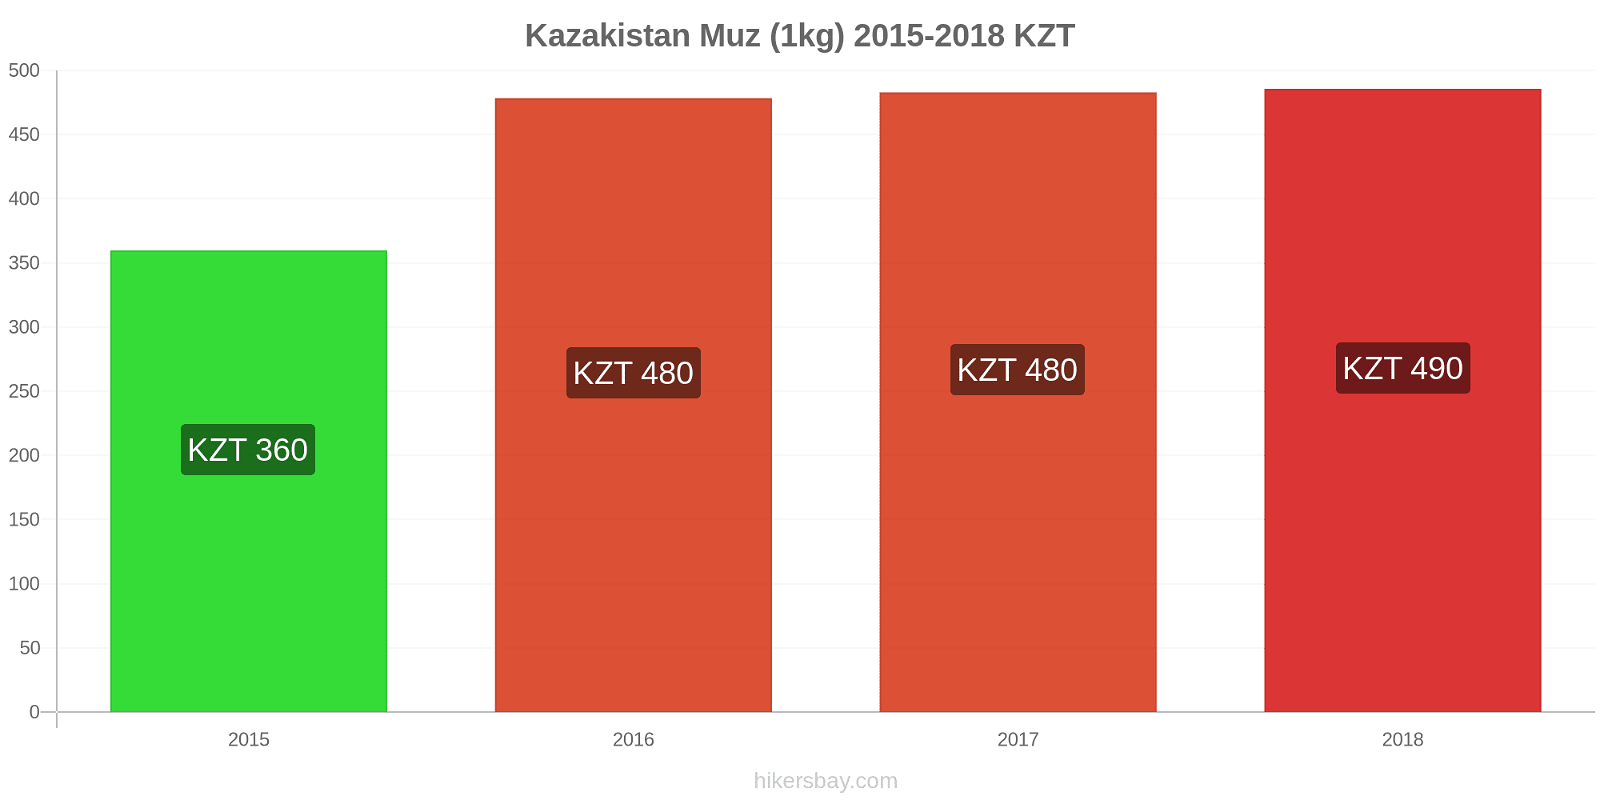 Kazakistan fiyat değişiklikleri Muzlar (1kg) hikersbay.com